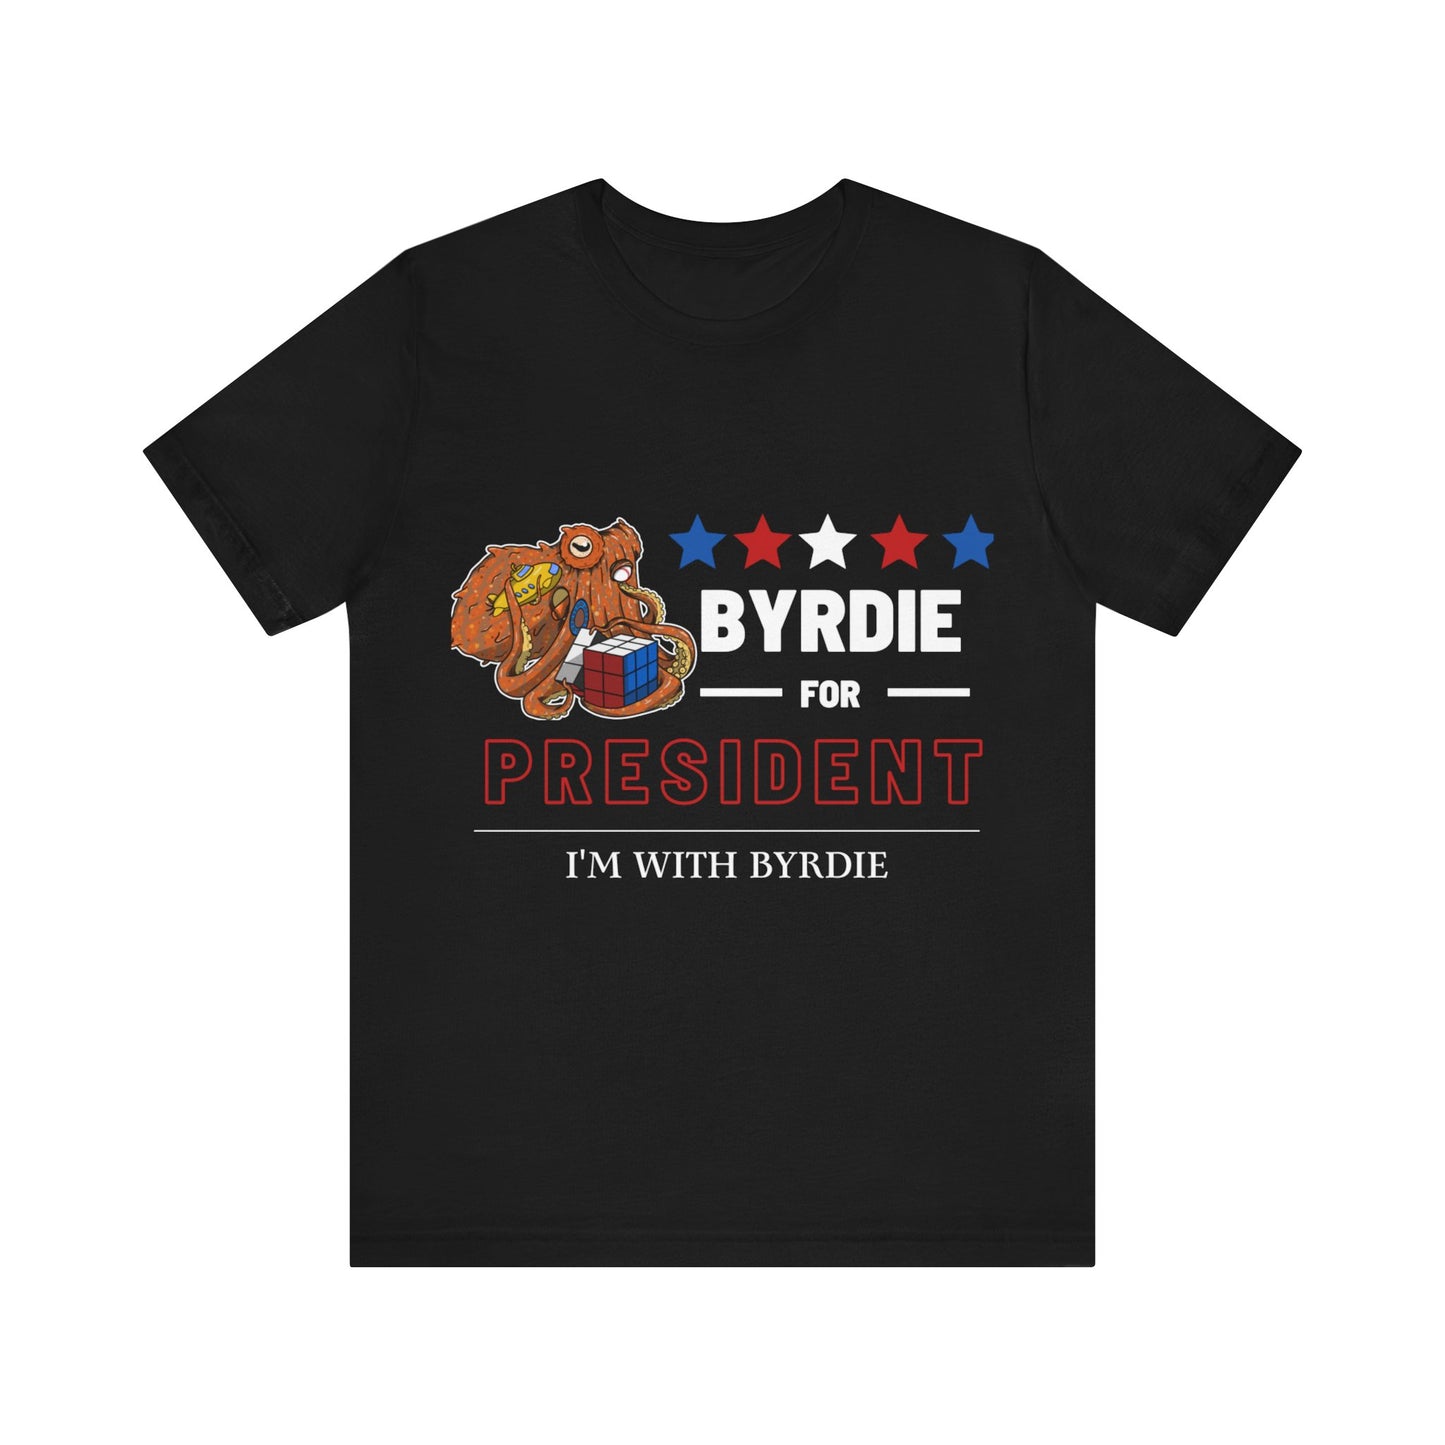 Byrdie for President - With Byrdie